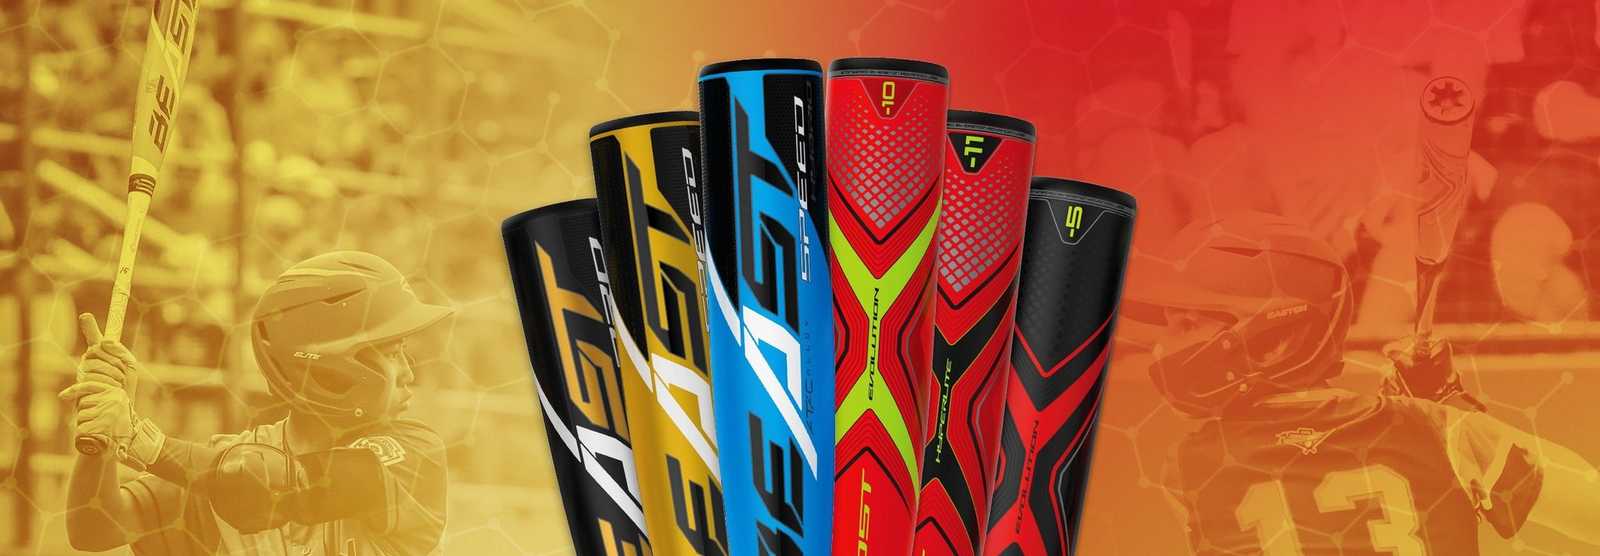 Easton Bat Logo - Aluminum & Composite Bats | USA Approved Youth Baseball Bats | Easton